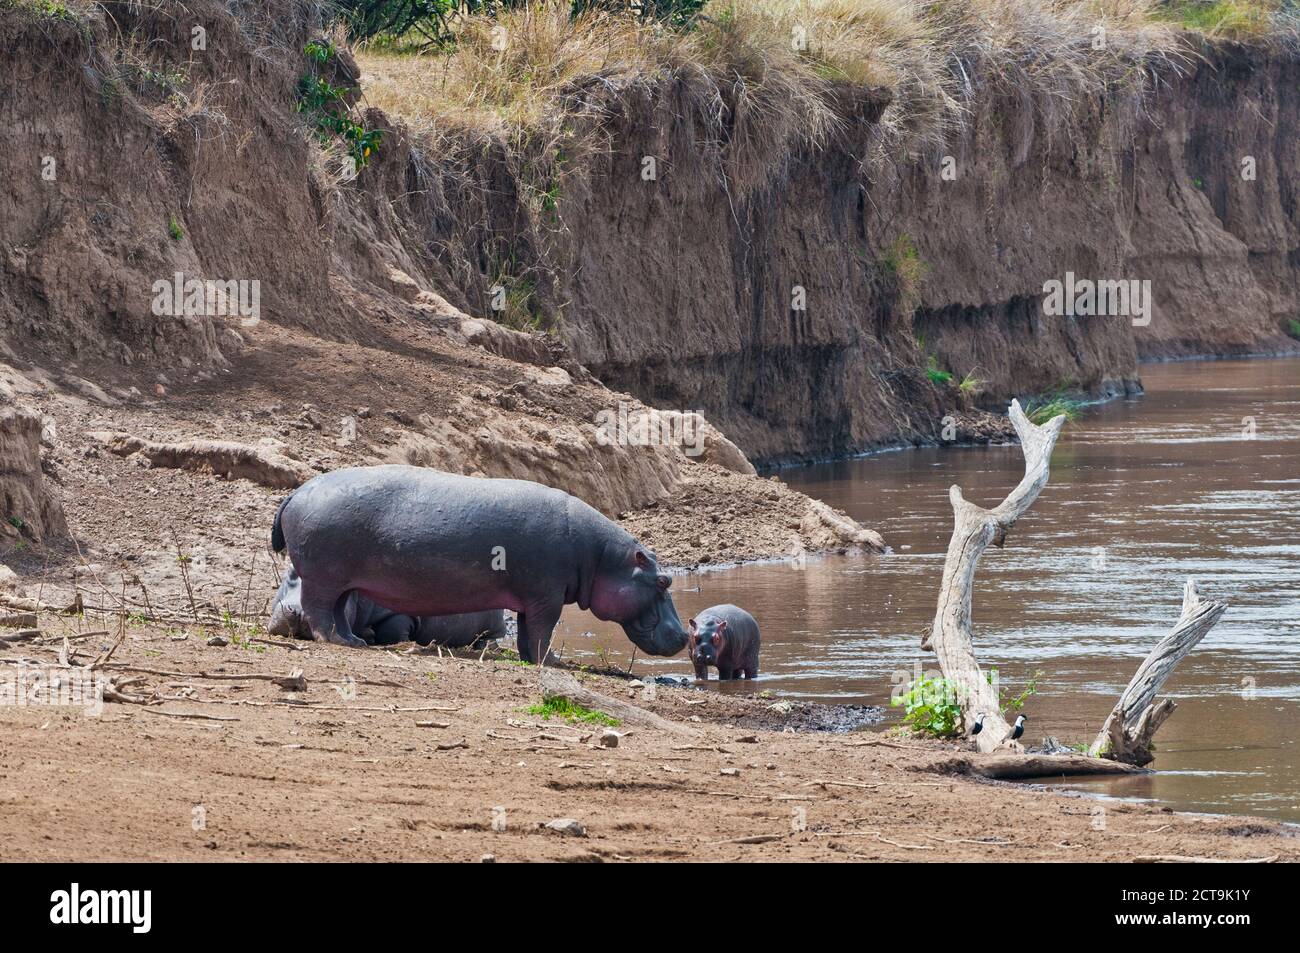 Afrique, Kenya, Masai Mara National Reserve, d'hippopotame ou de l'Hippopotame (Hippopotamus amphibius) avec les jeunes nouveau-né à Mara River Banque D'Images